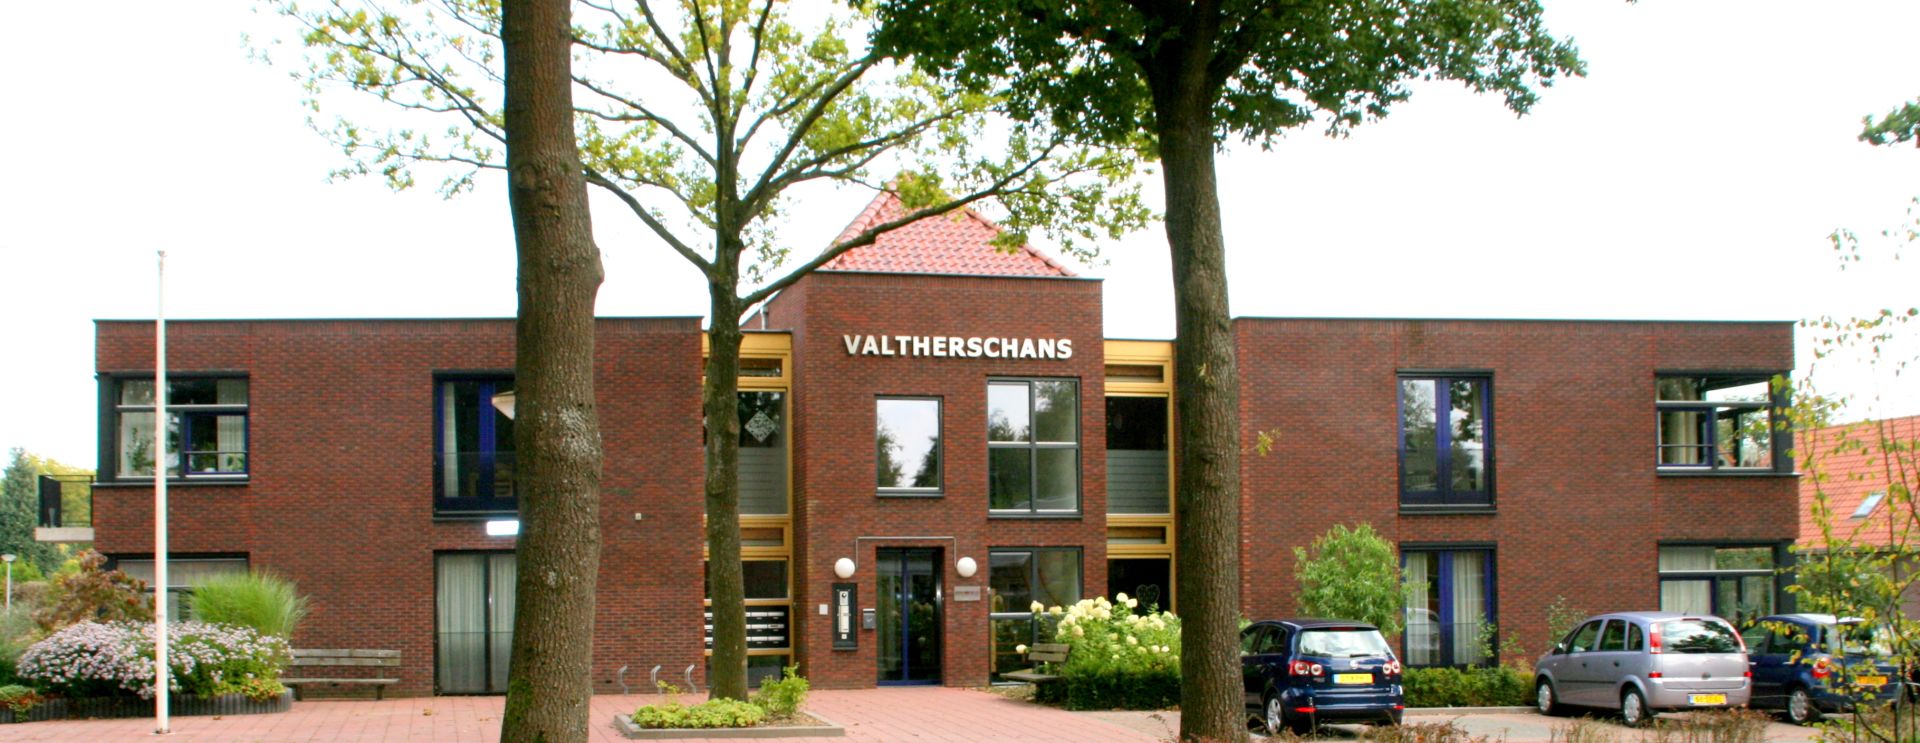 De Valtherschans